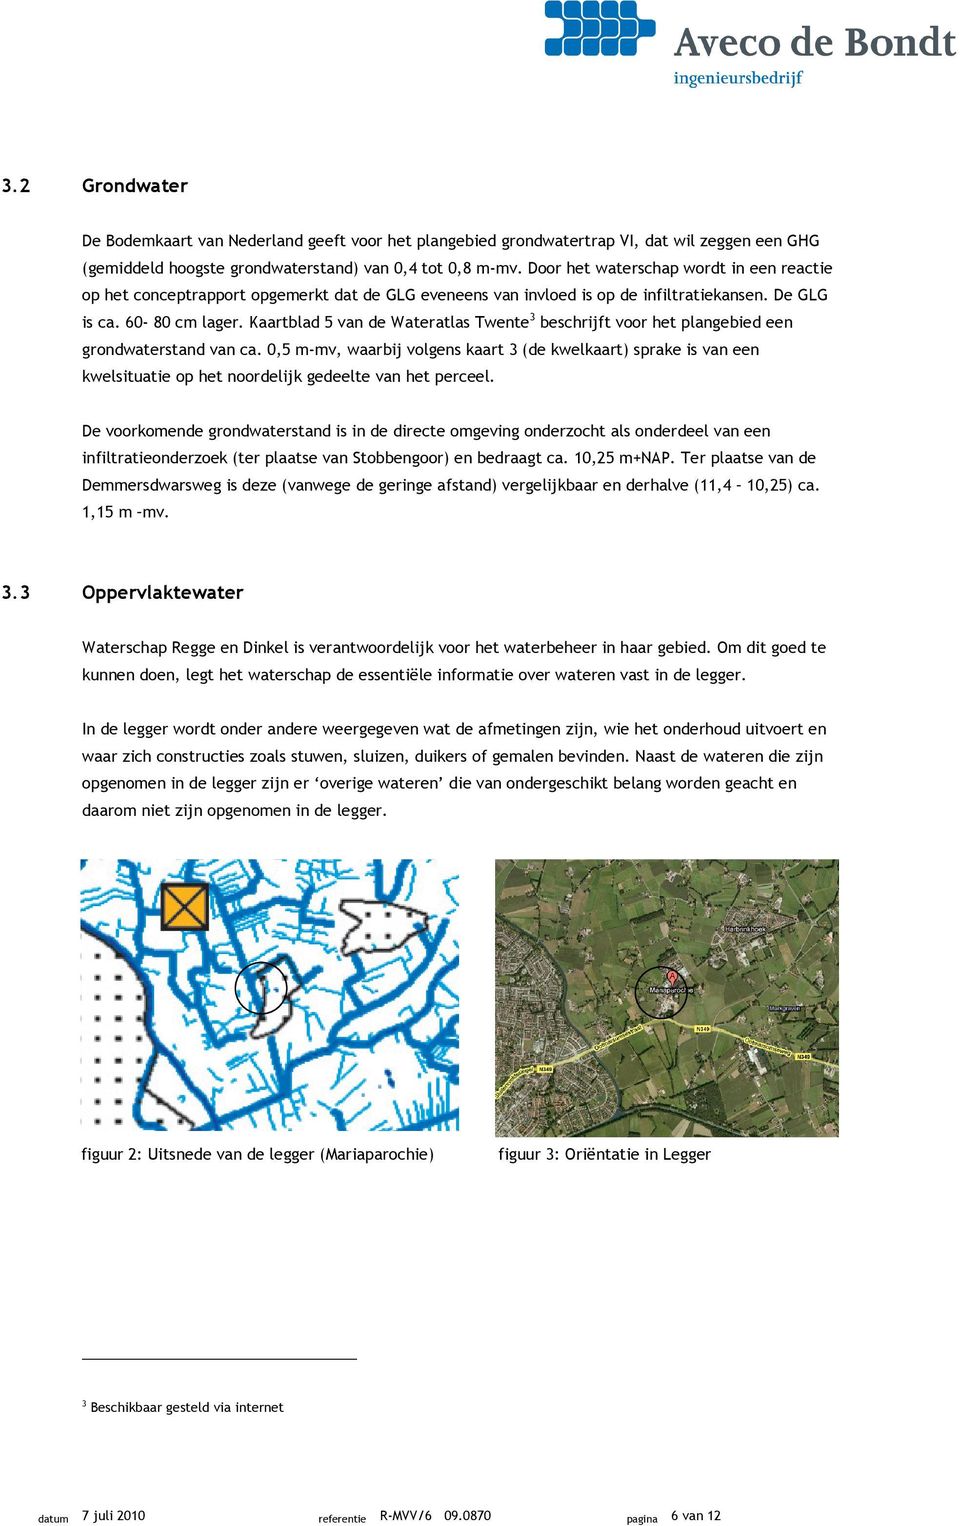 Kaartblad 5 van de Wateratlas Twente 3 beschrijft voor het plangebied een grondwaterstand van ca.